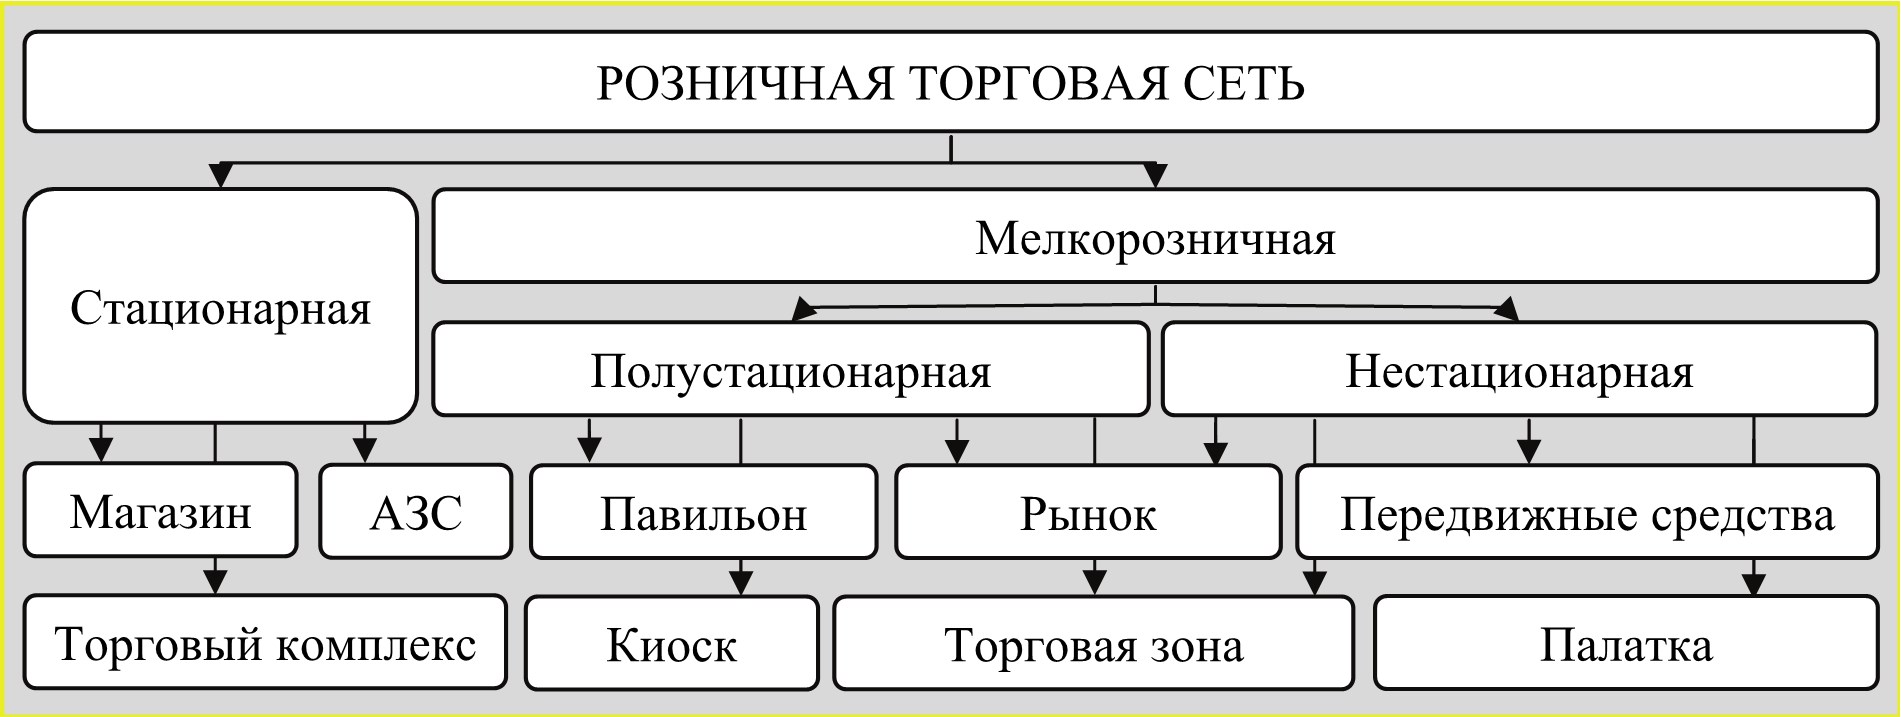 Схема классификации торговых предприятий